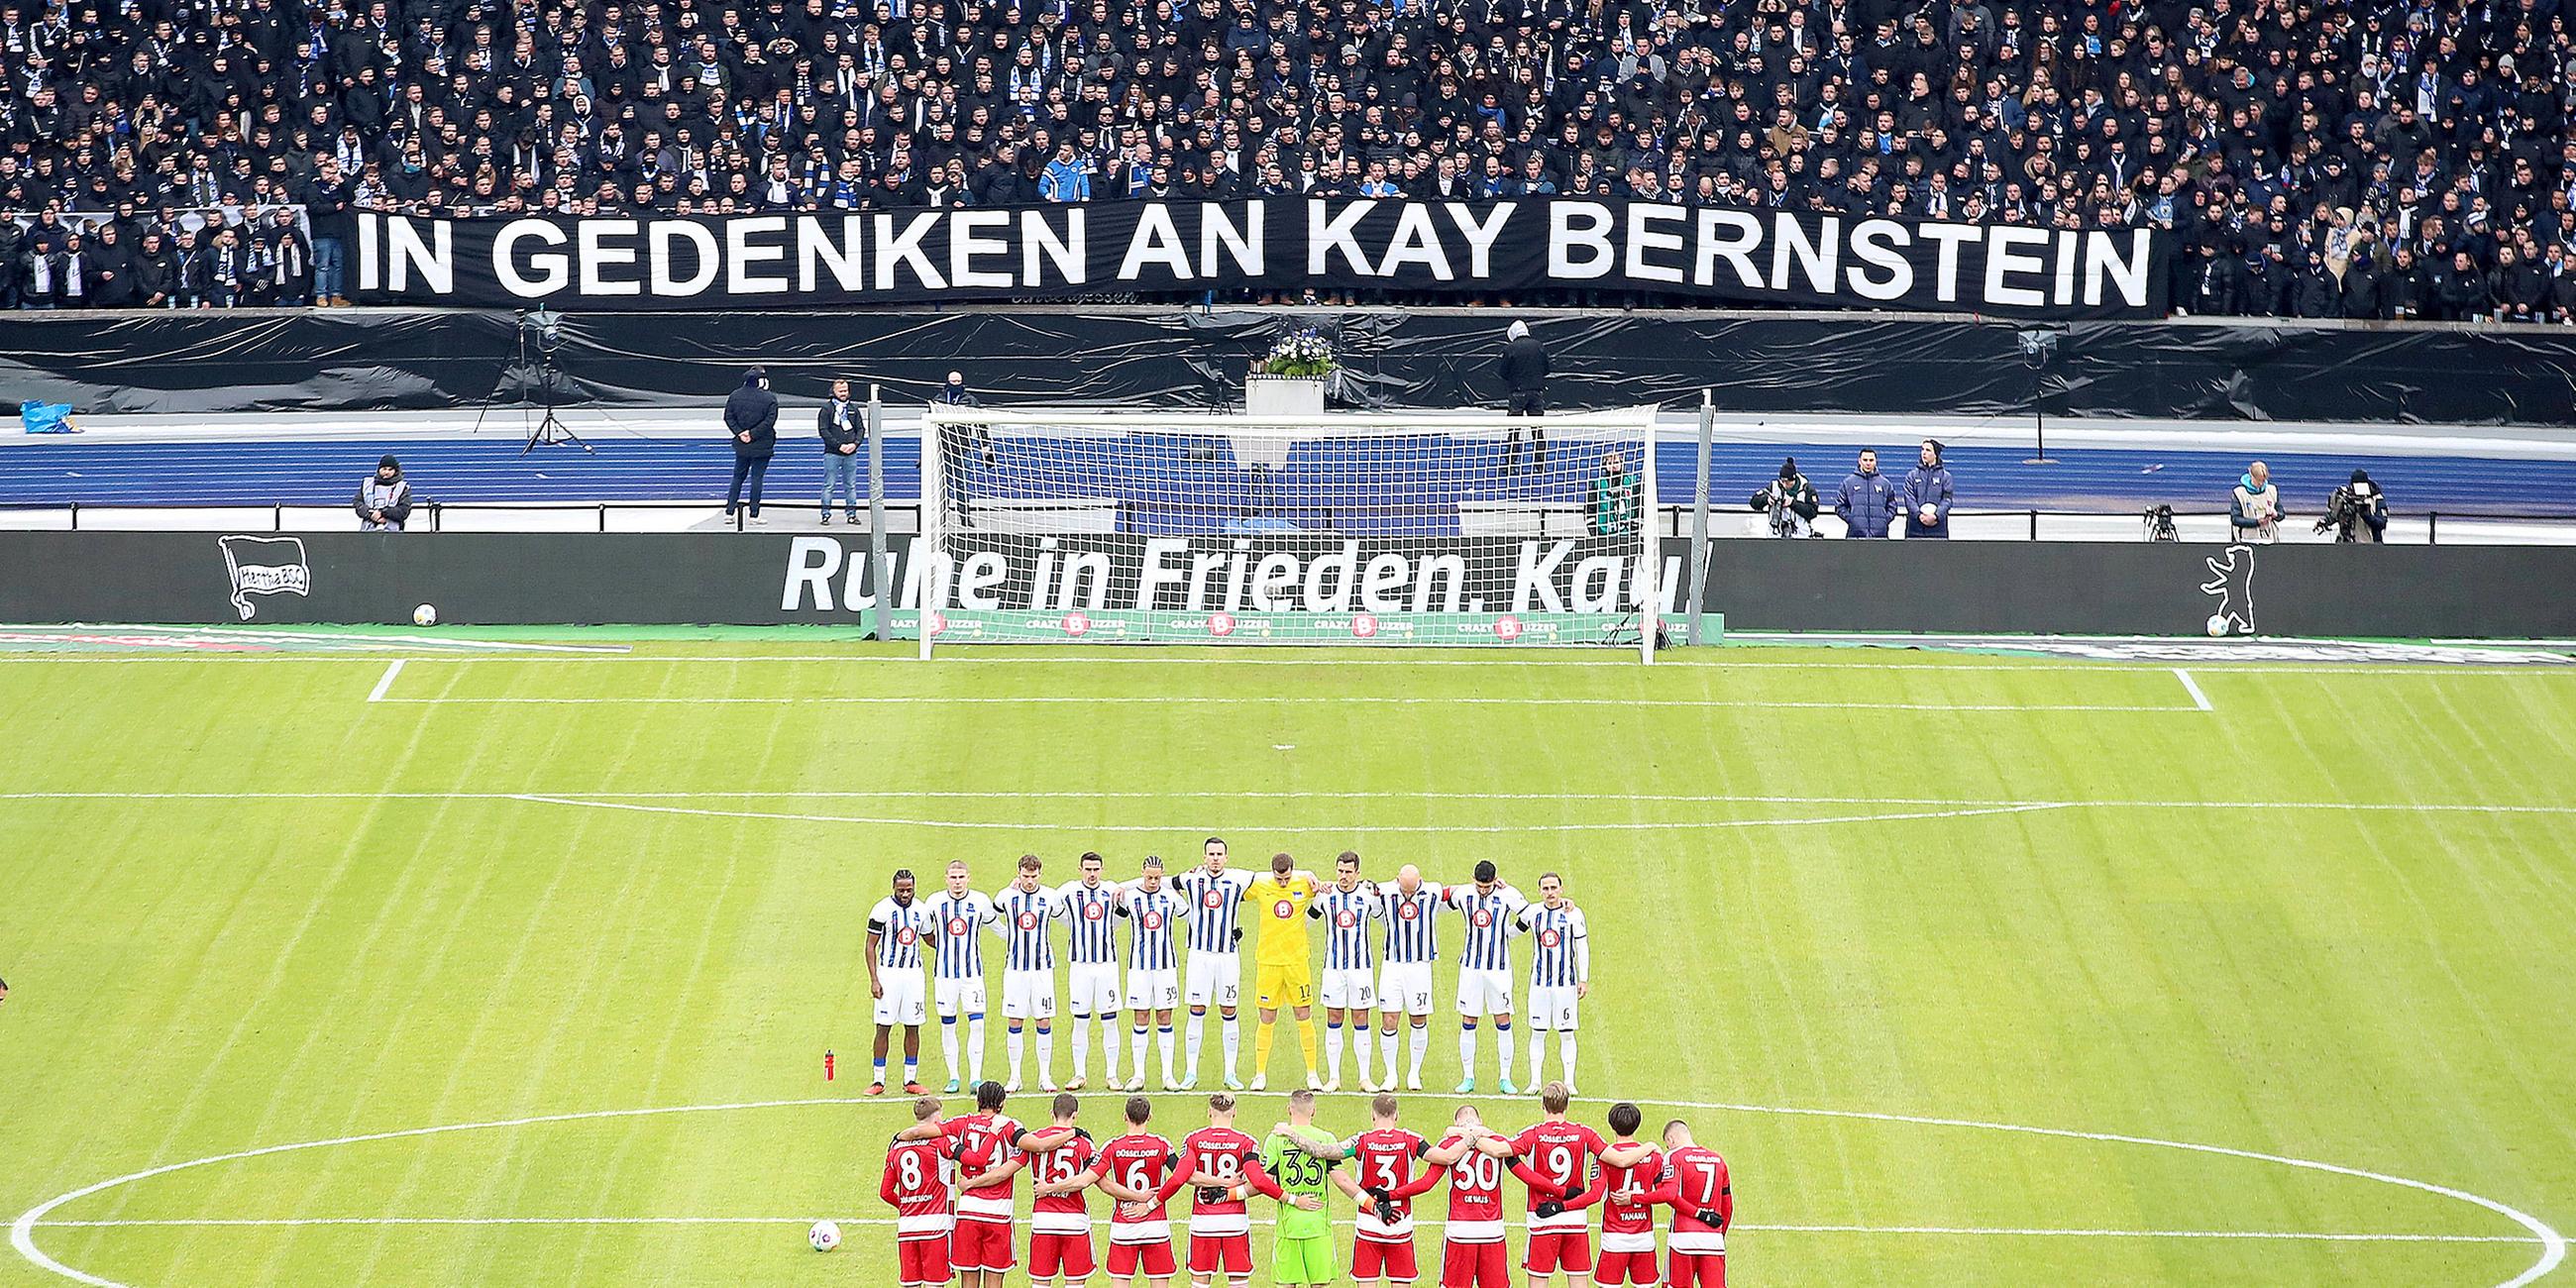  Hertha BSC Berlin - Fortuna Duesseldorf emspor, v.l. Schweigeminute für den verstorbenen Praesident Präsident Kay Bernstein (Hertha BSC Berlin).